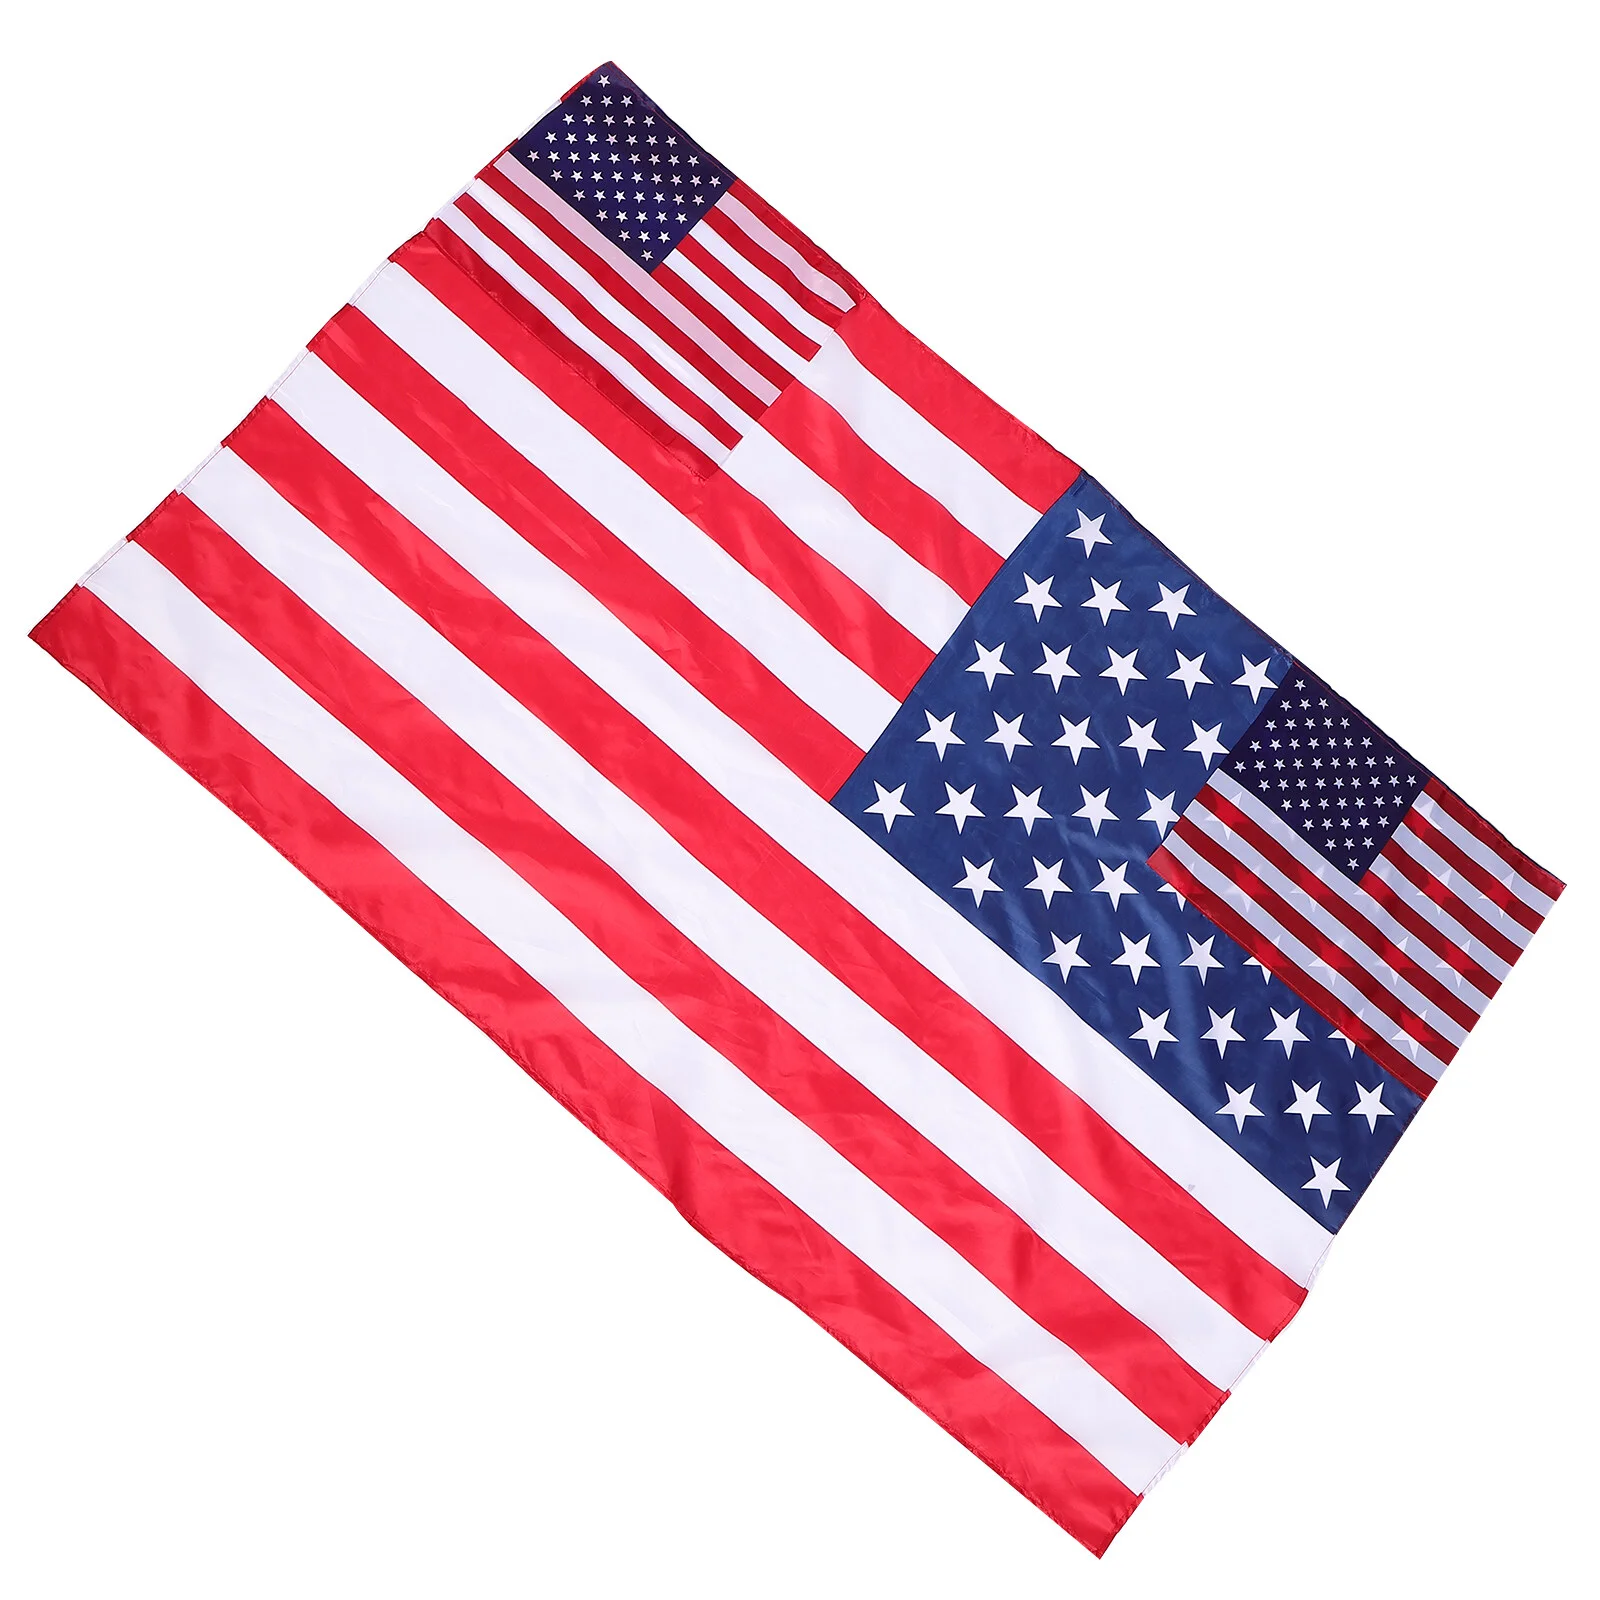 

Накидка с флагом день накидки патриотическая национальная независимость Америка костюм для ветеранов памятный США 4 июля искусственные флаги гонка приветствие